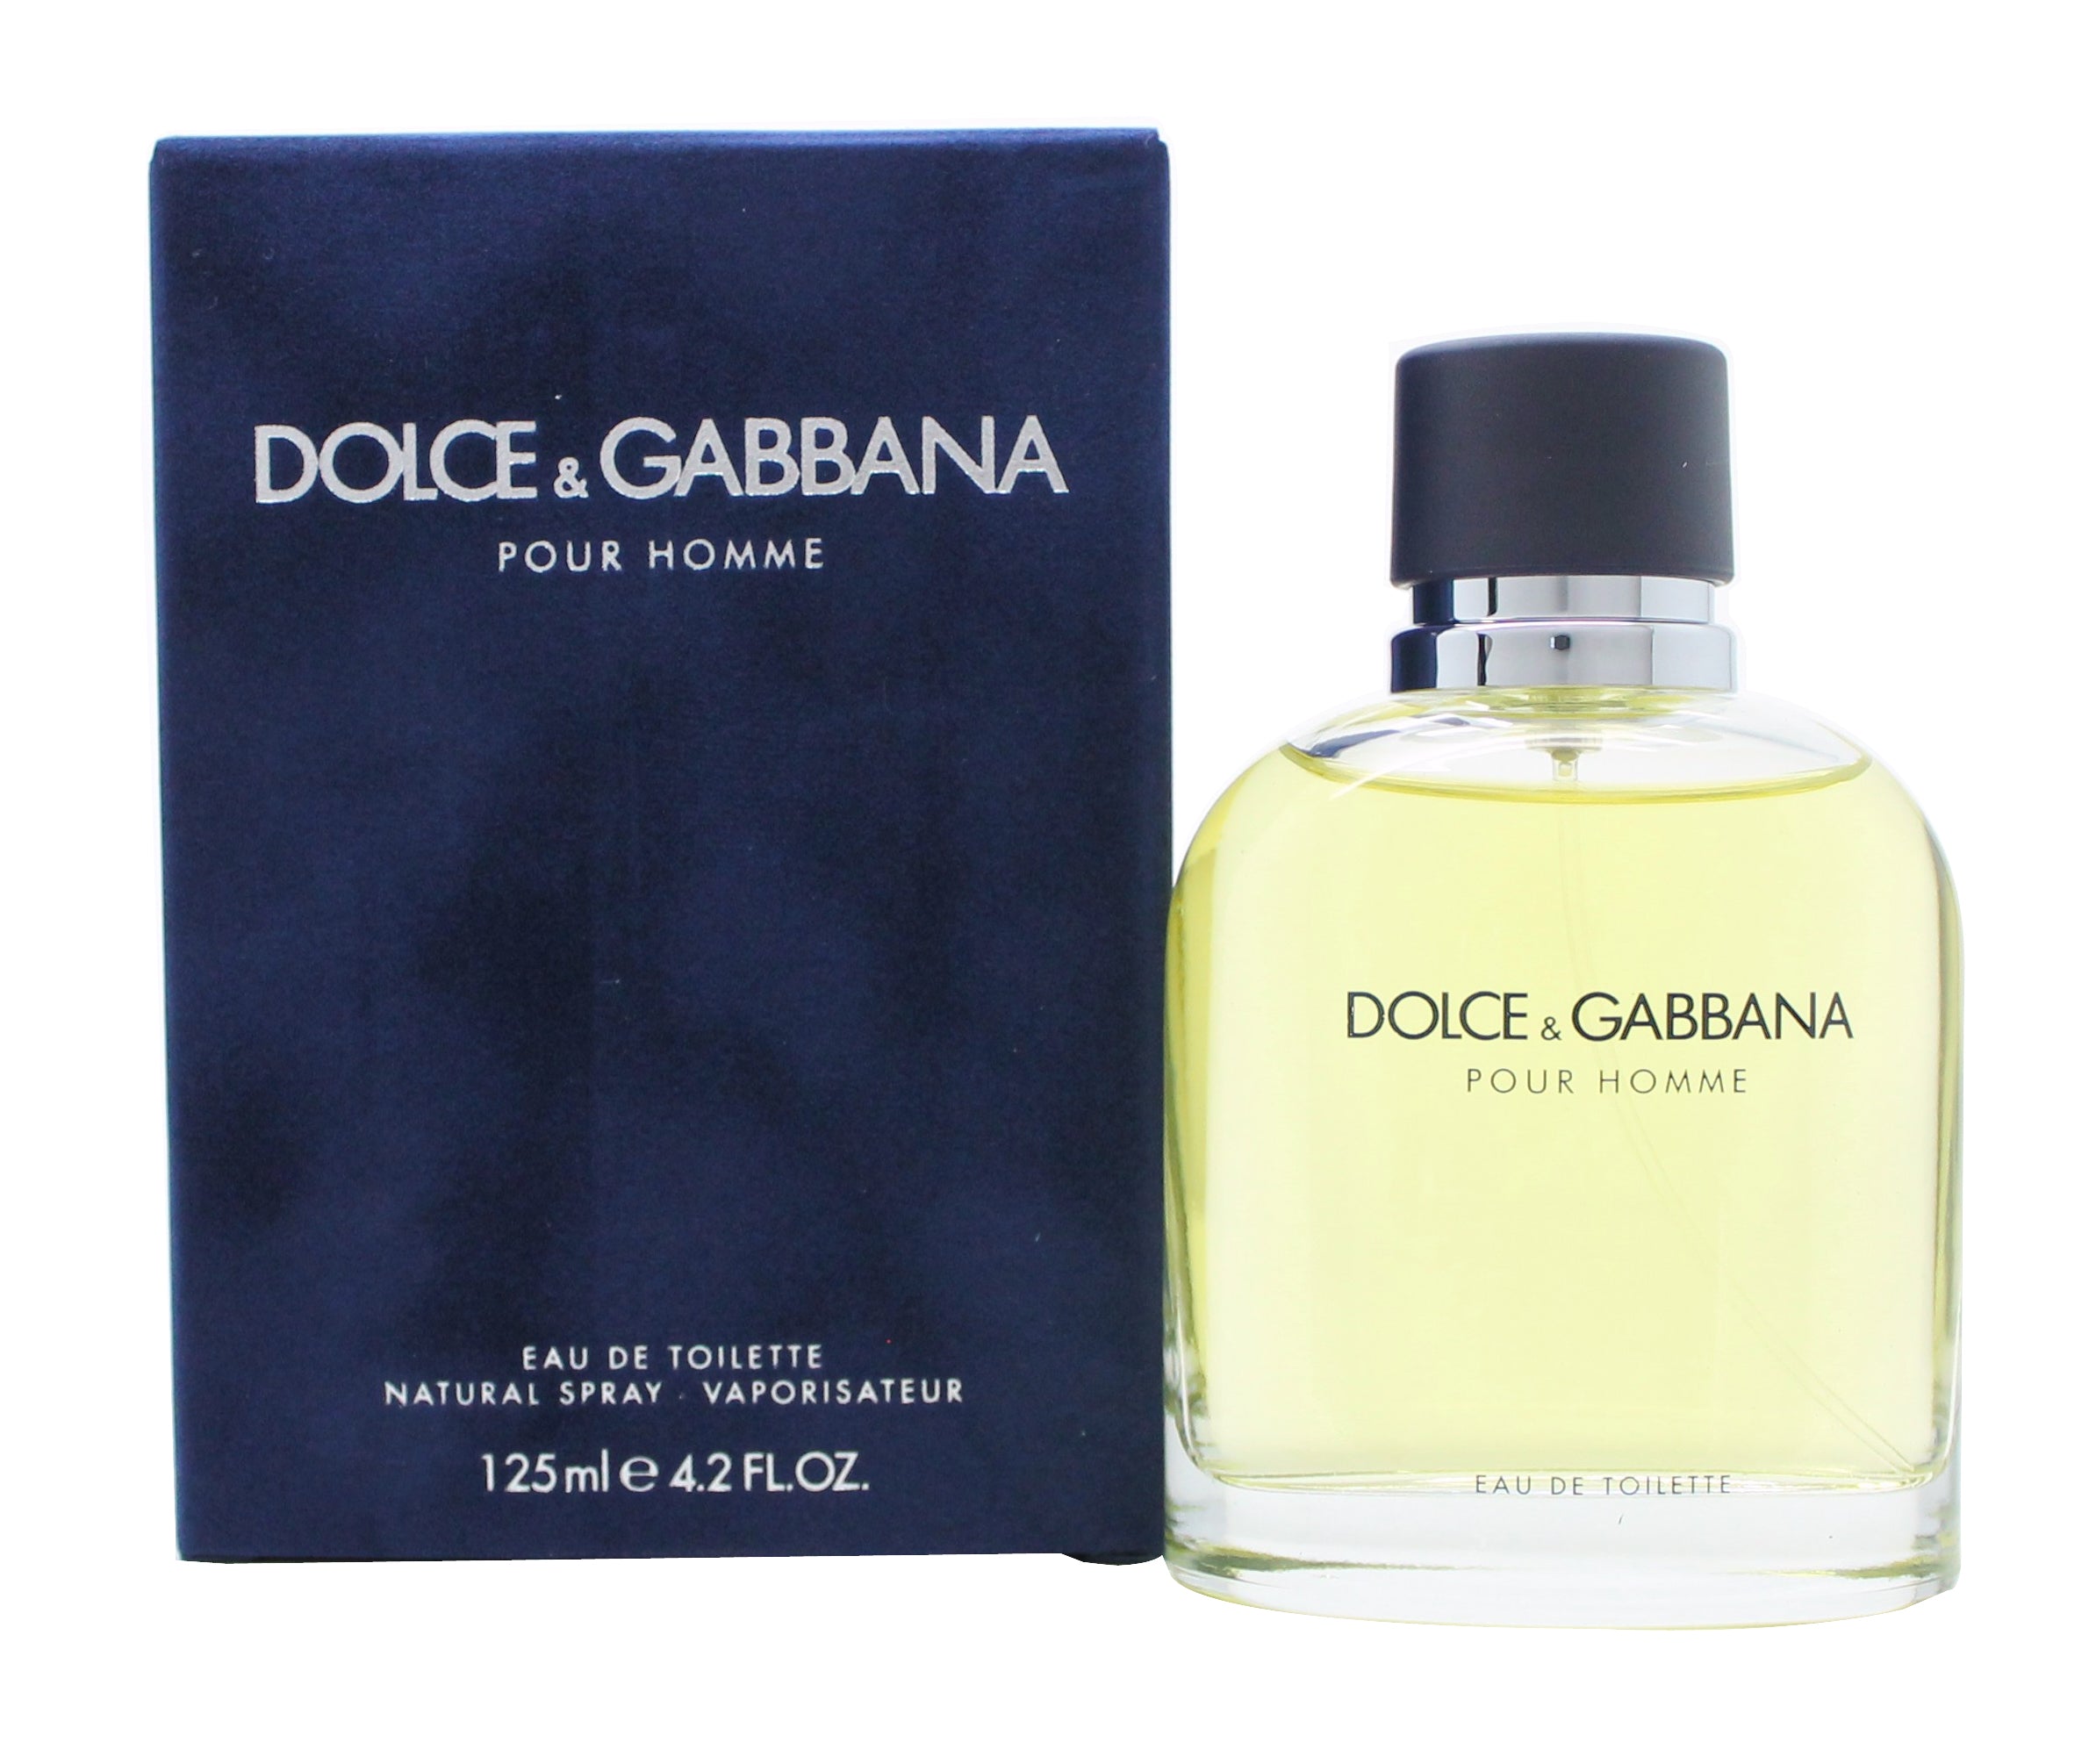 View Dolce Gabbana Pour Homme Eau De Toilette 125ml Spray information